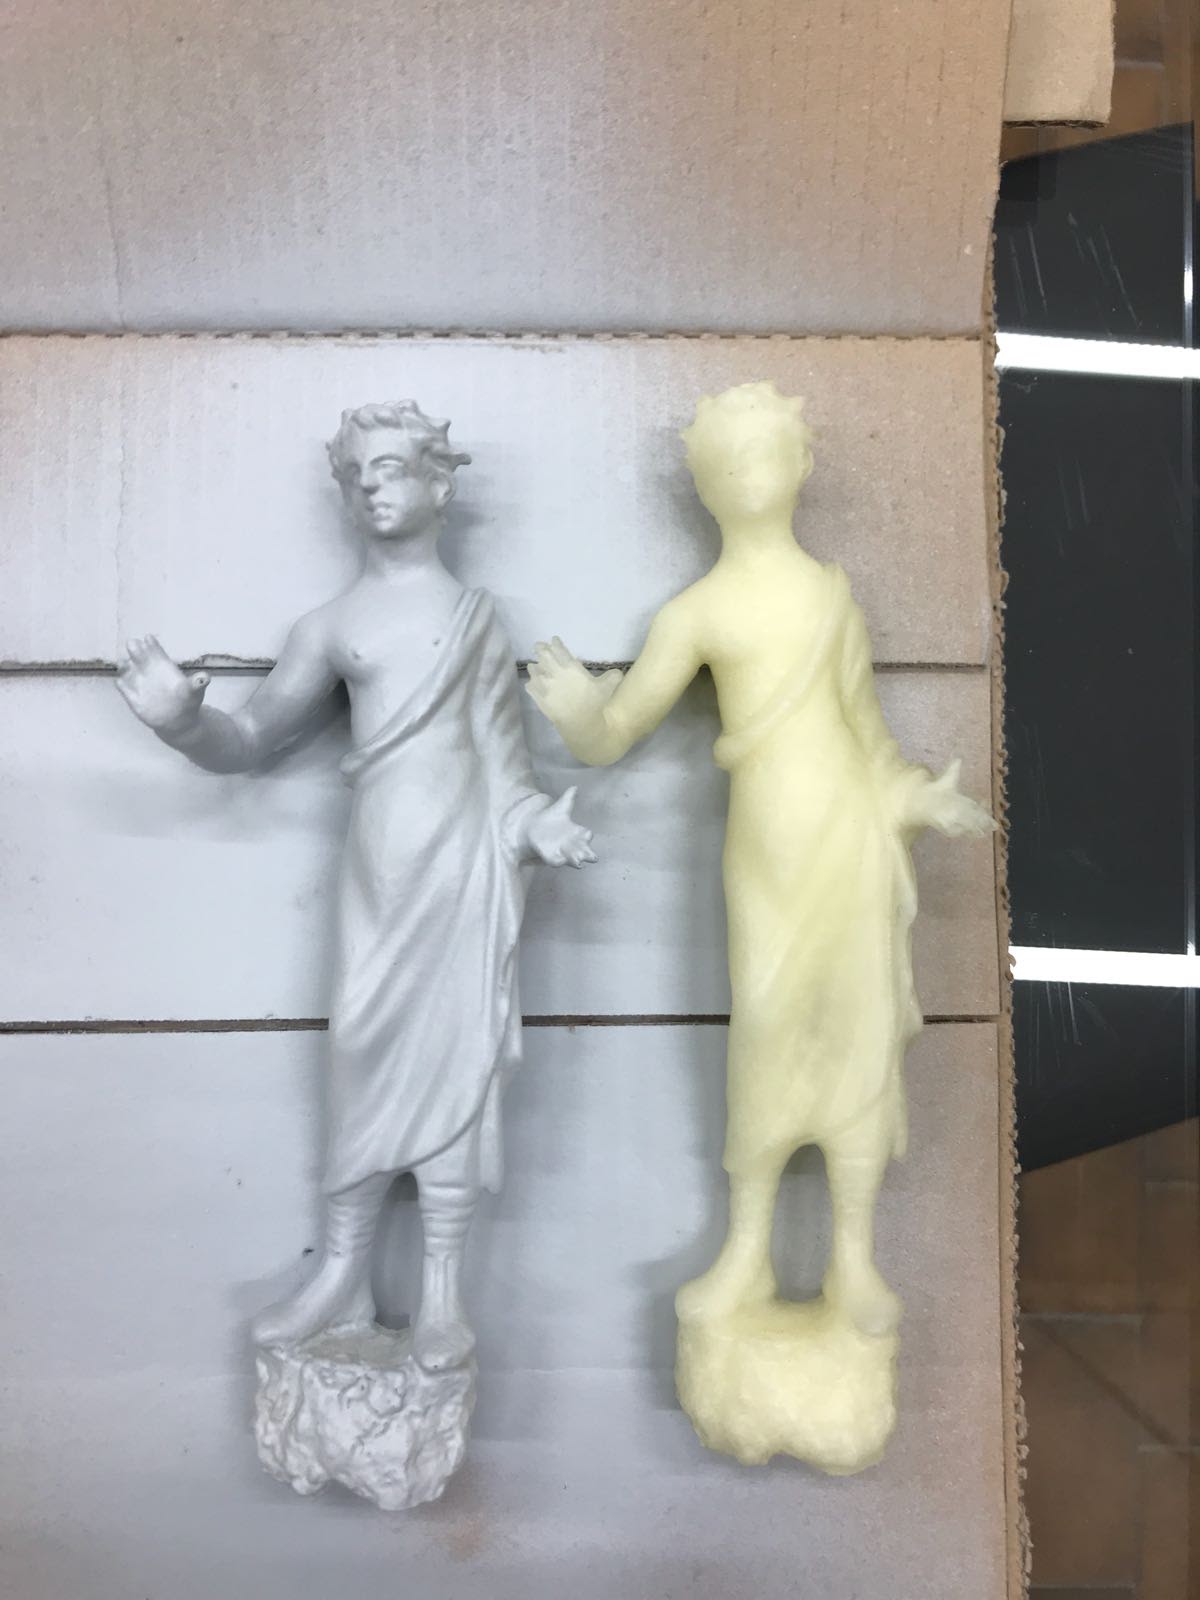 Copie tattili dell'Orante della Domus dei Dolia realizzate nel progetto Museo4U.